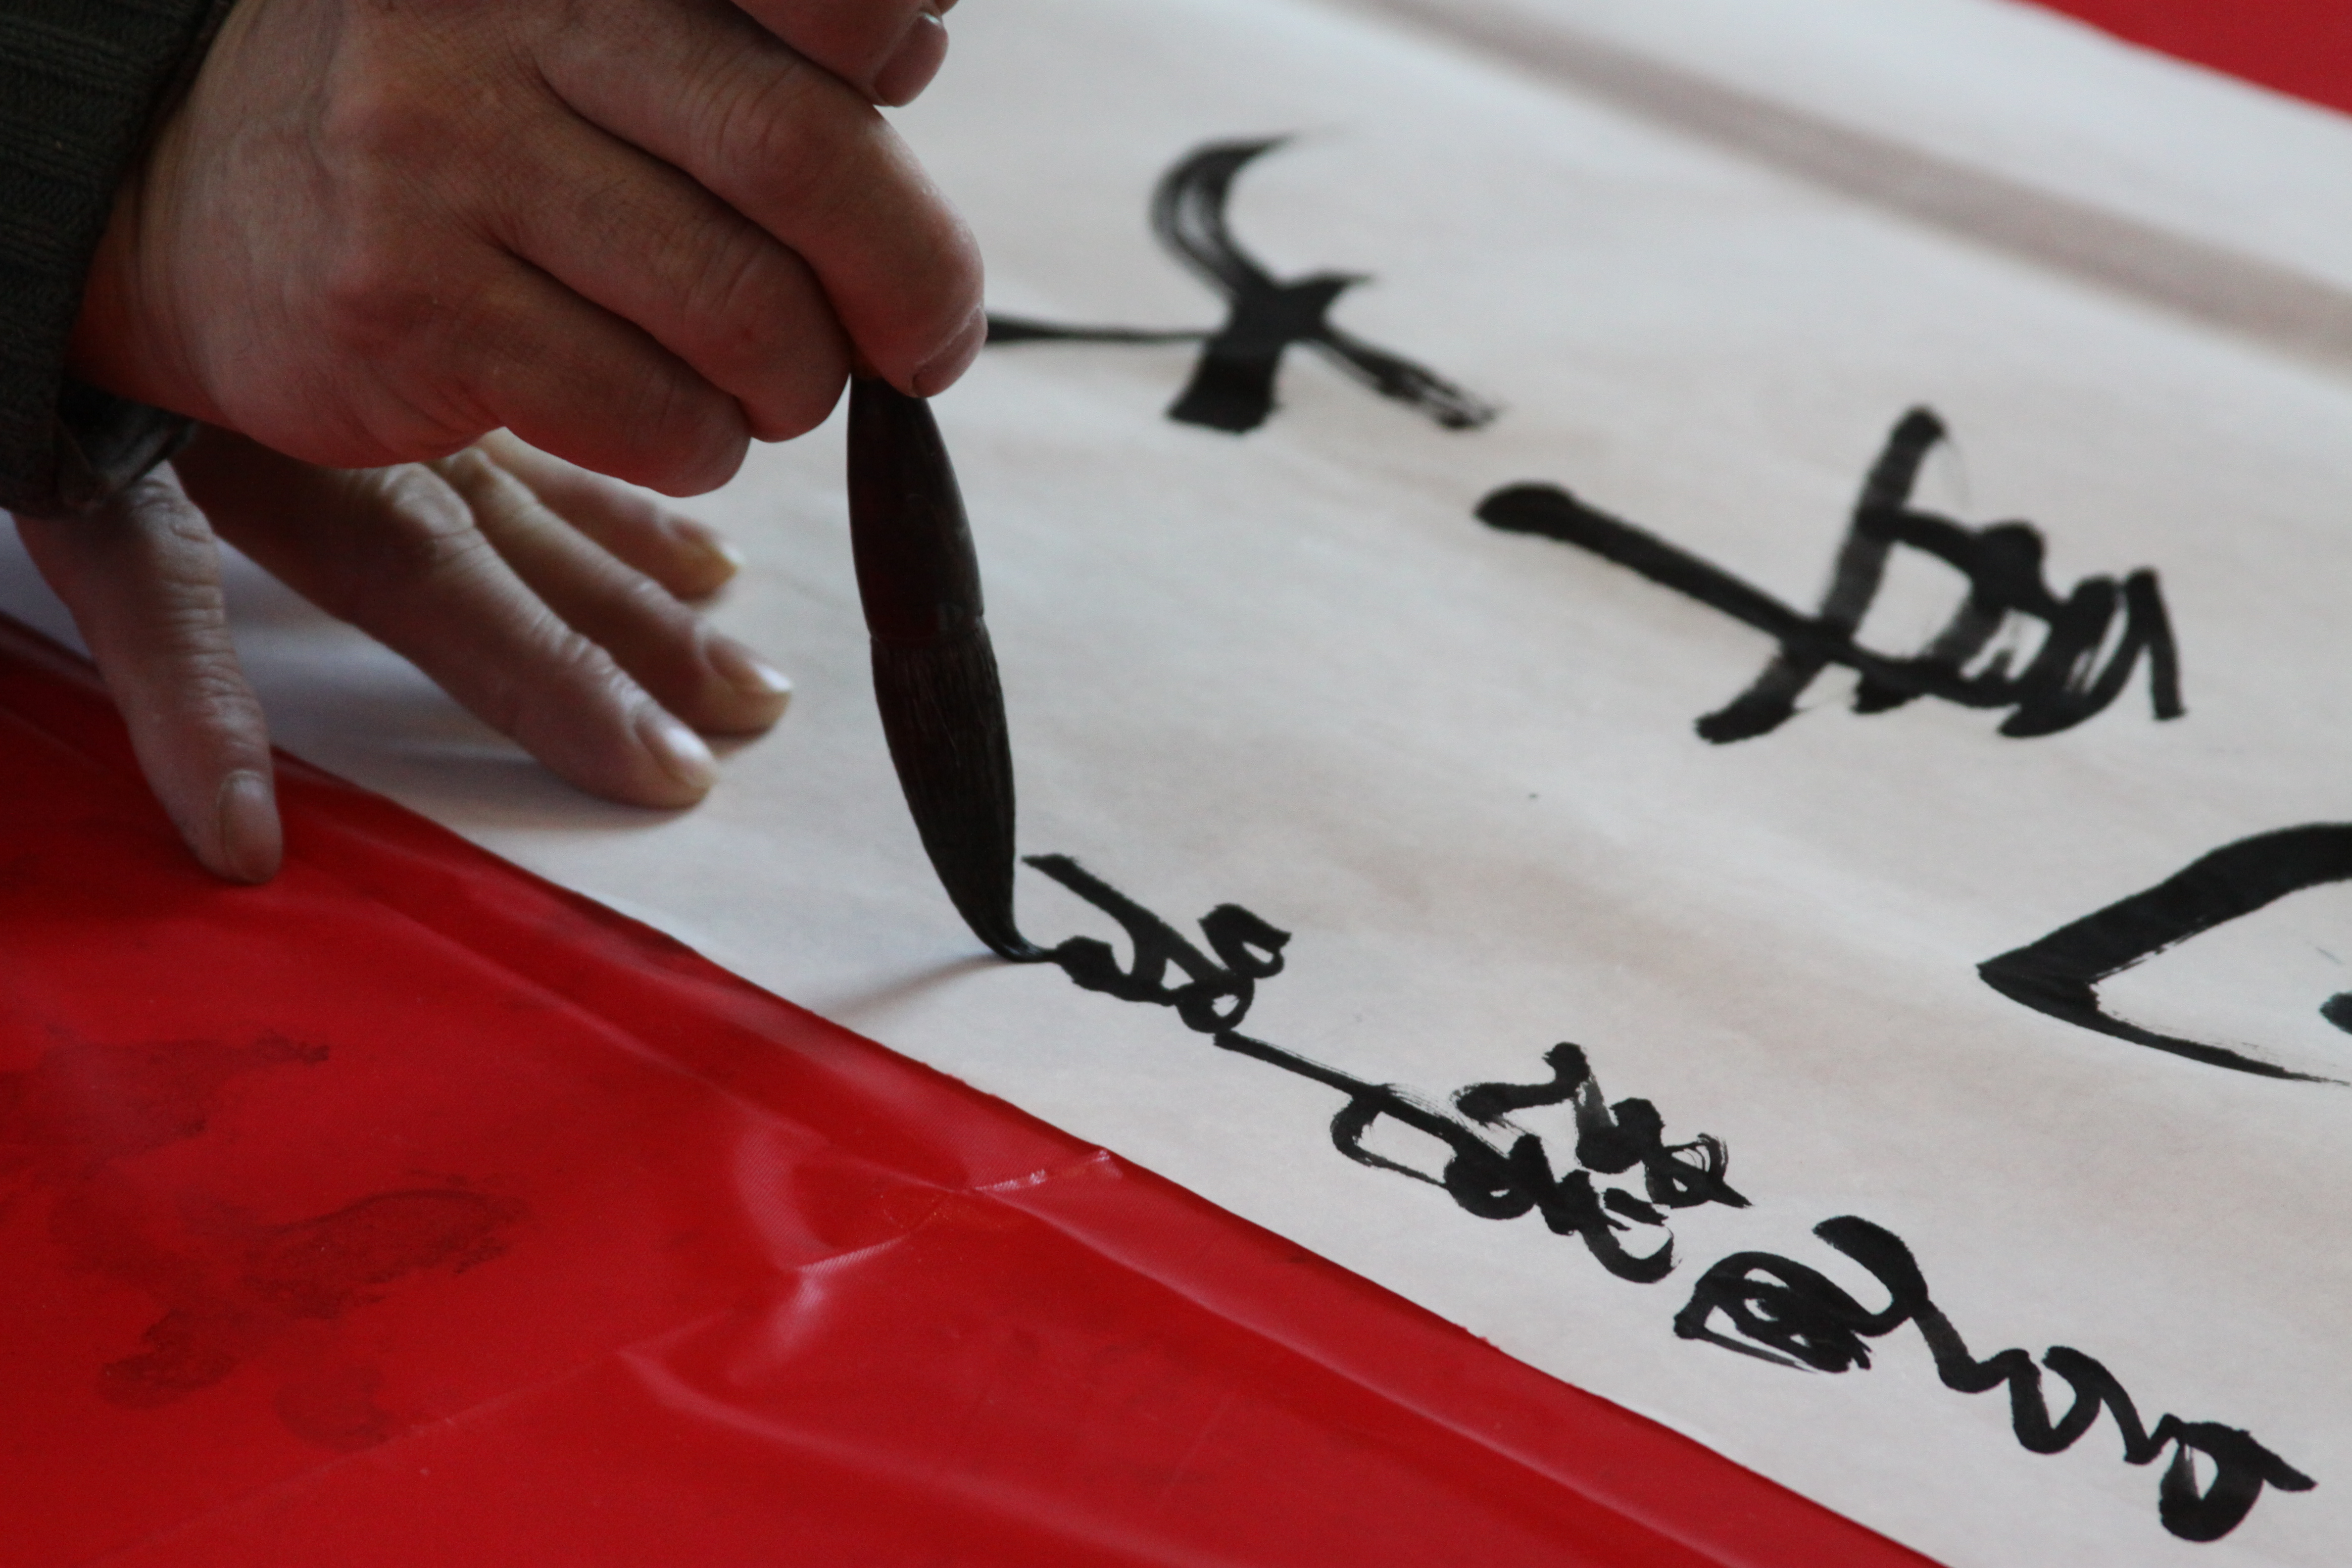 Chinese Calligraphy, Confucius Institute